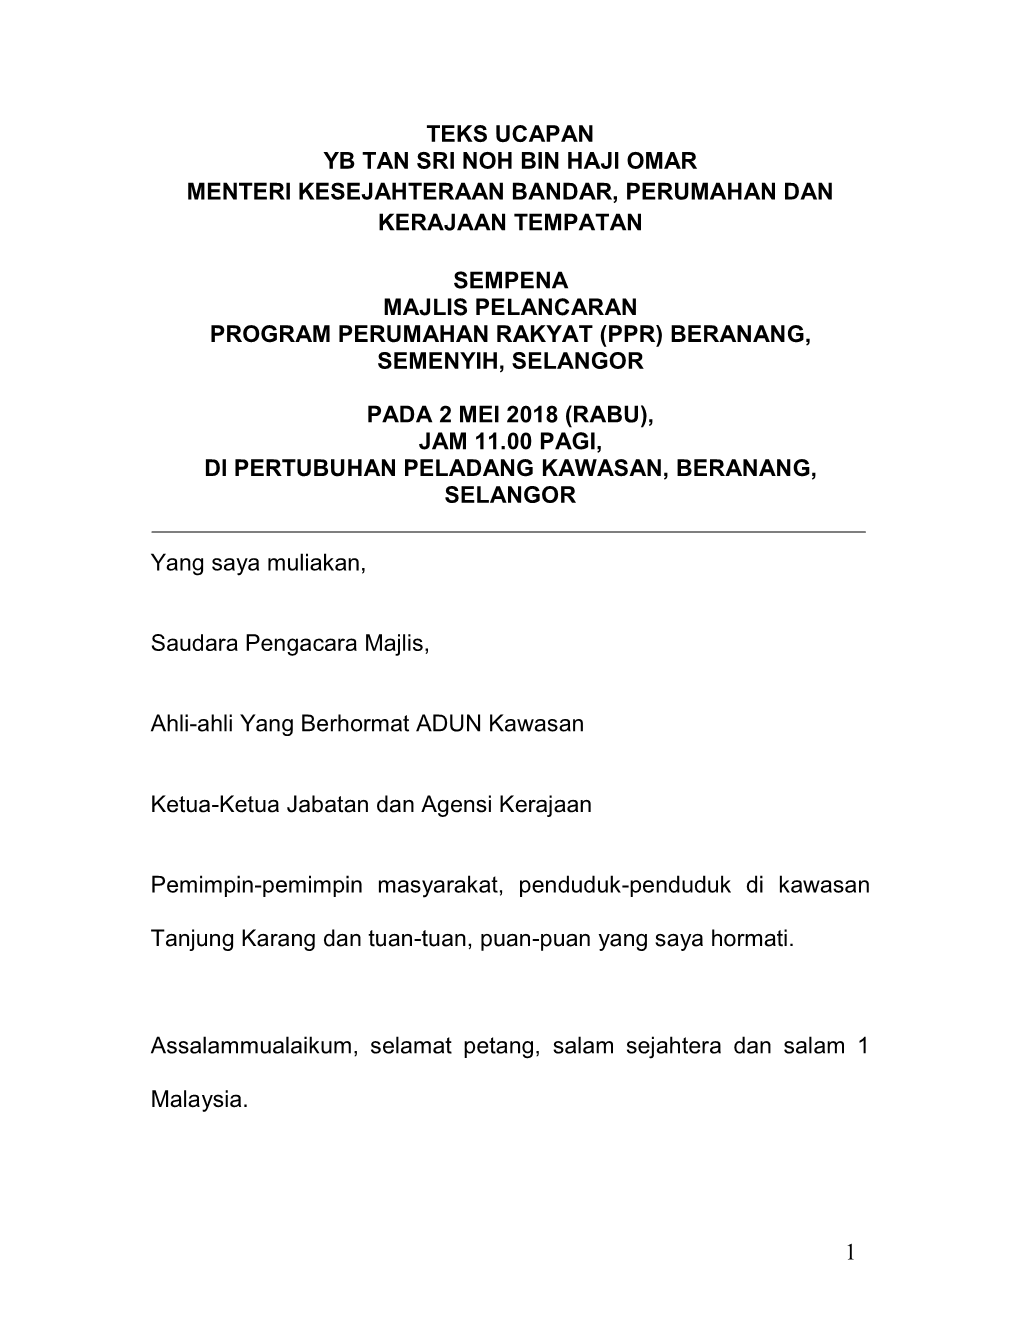 Majlis Pelancaran Program Perumahan Rakyat (Ppr) Beranang, Semenyih, Selangor